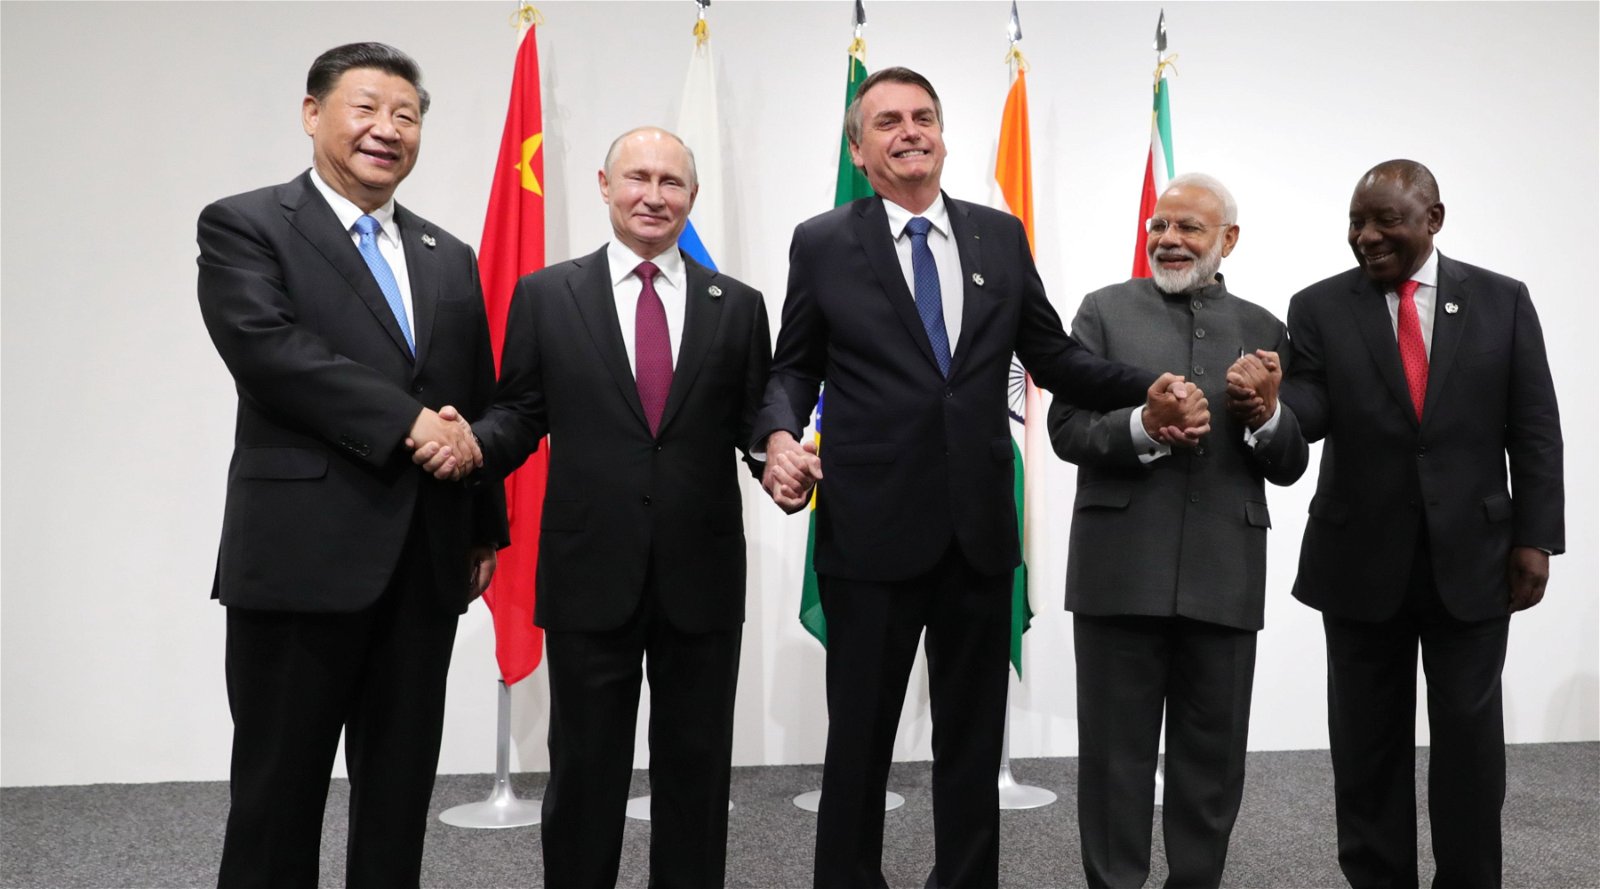 Il gruppo BRICS supera il G7 in termini di PIL